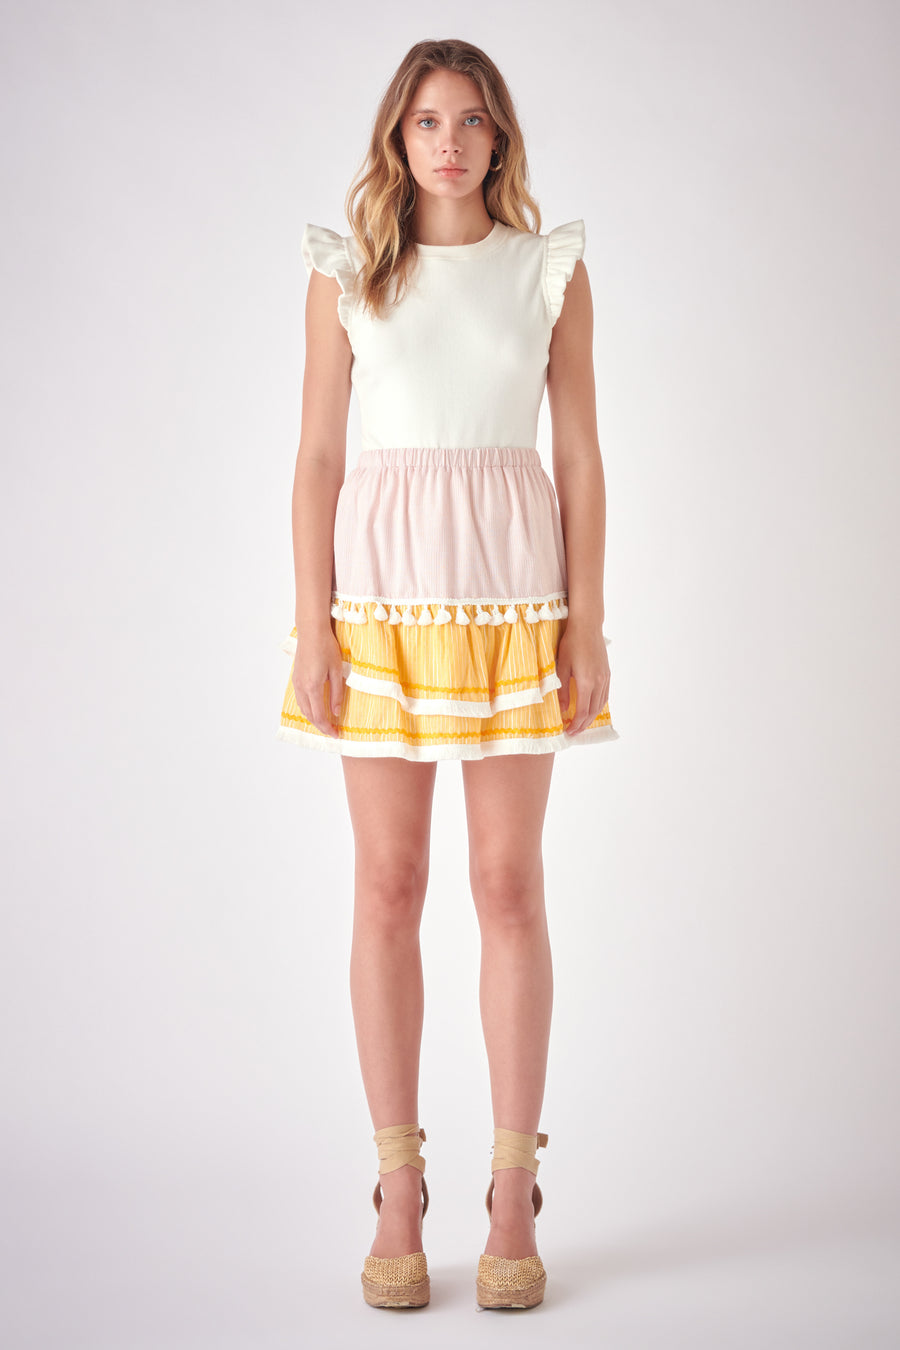 Embellishment Skirt